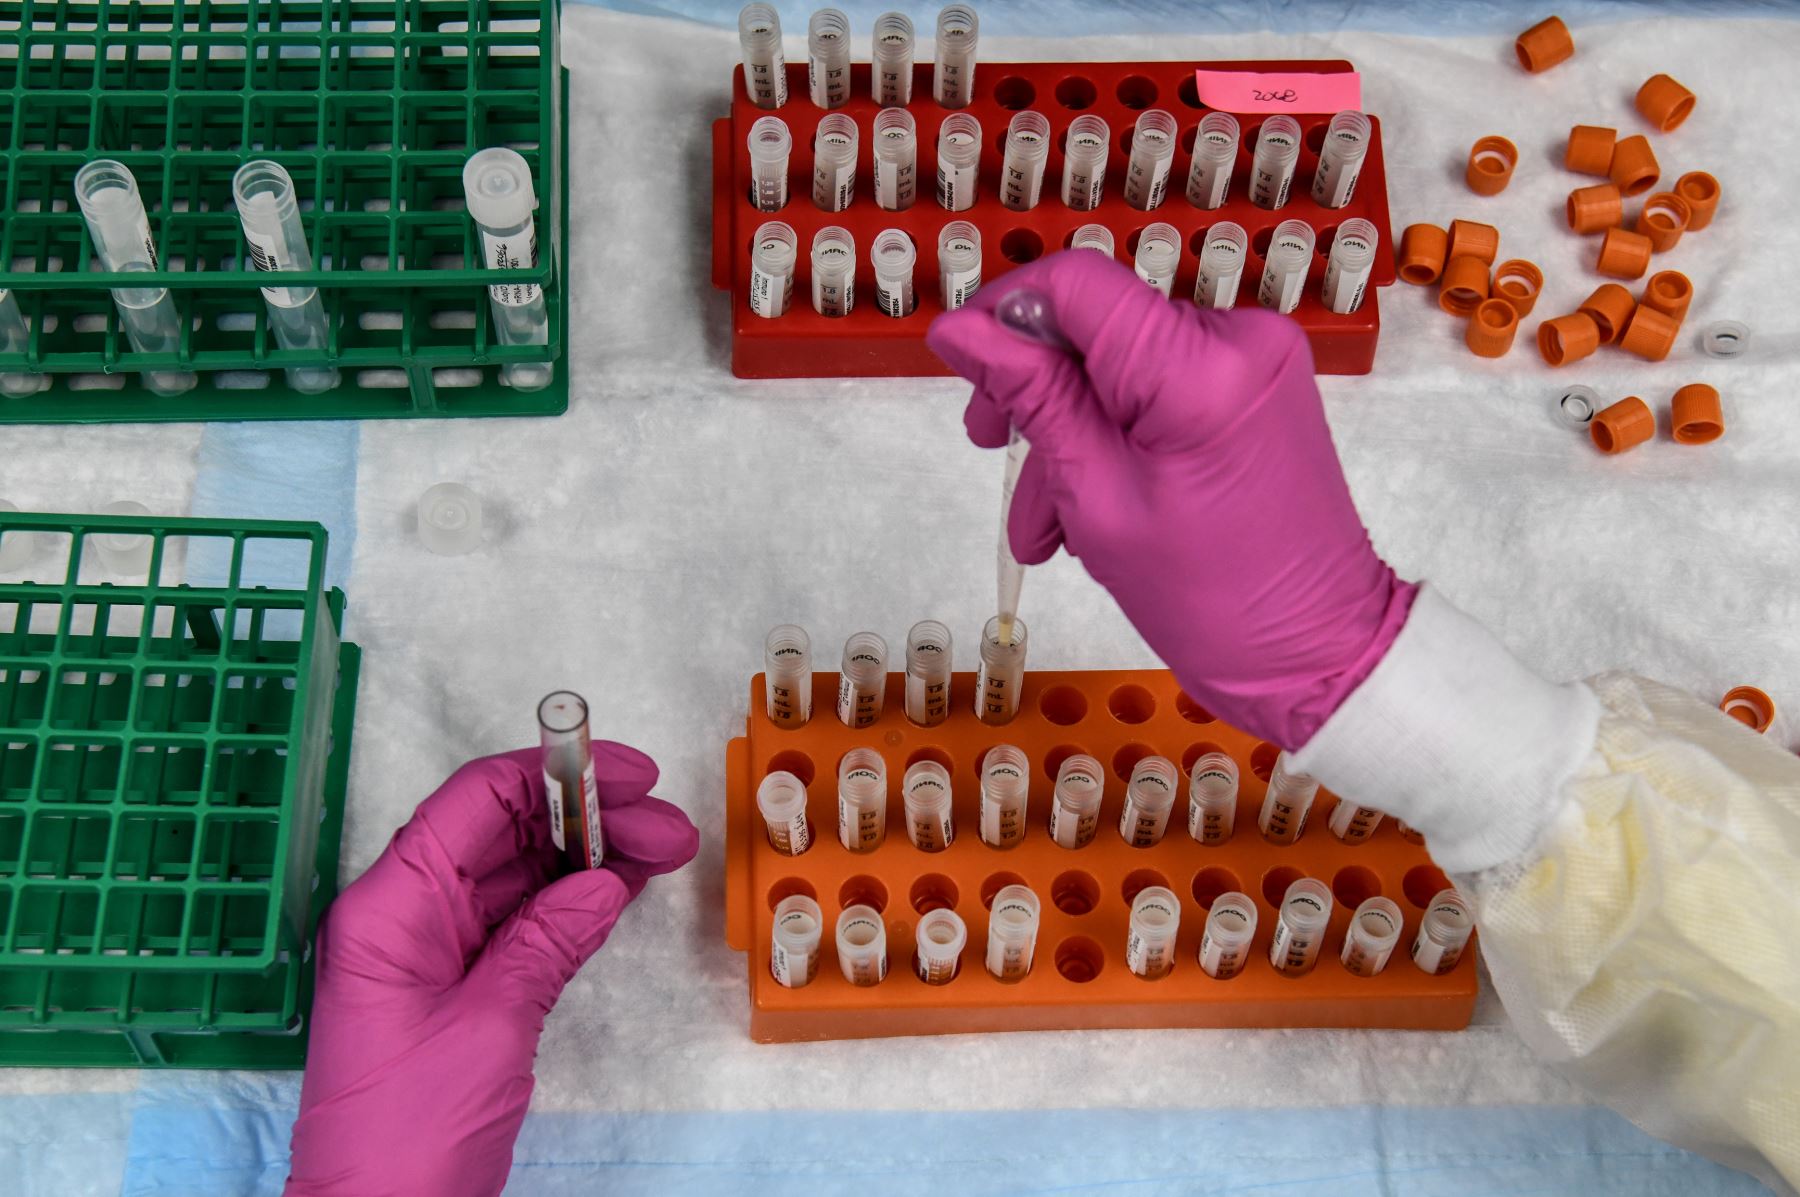 La farmacéutica AstraZeneca suspende los ensayos de su vacuna por presentar problemas de seguridad con un paciente. Foto: AFP